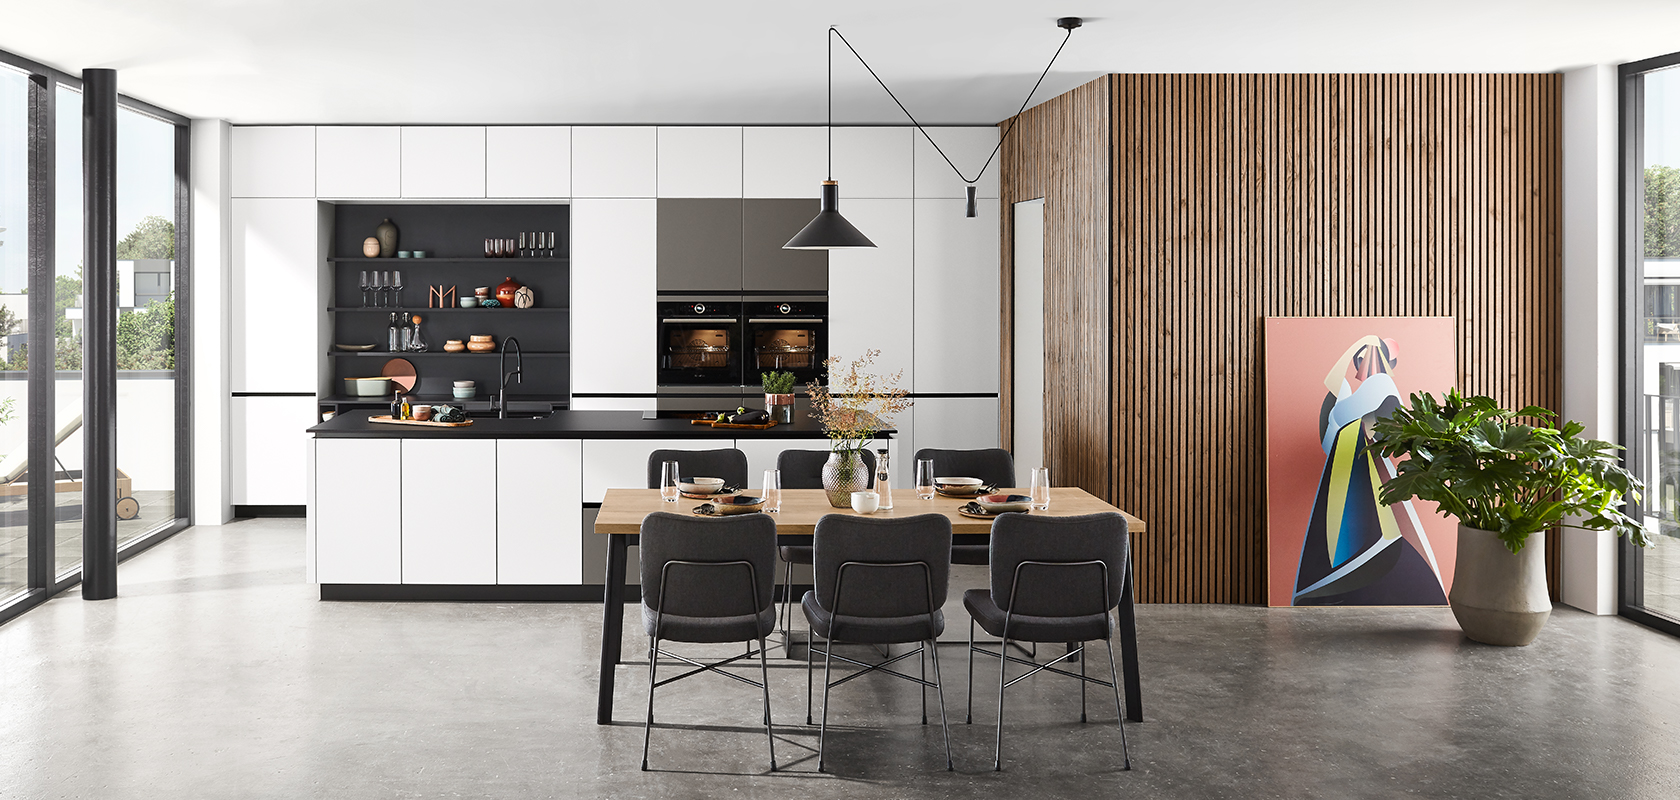 Moderne Kücheninnenräume mit eleganten schwarzen und weißen Schränken, Holzakzenten und einem Essbereich mit stilvollen Möbeln unter eleganten Pendelleuchten.